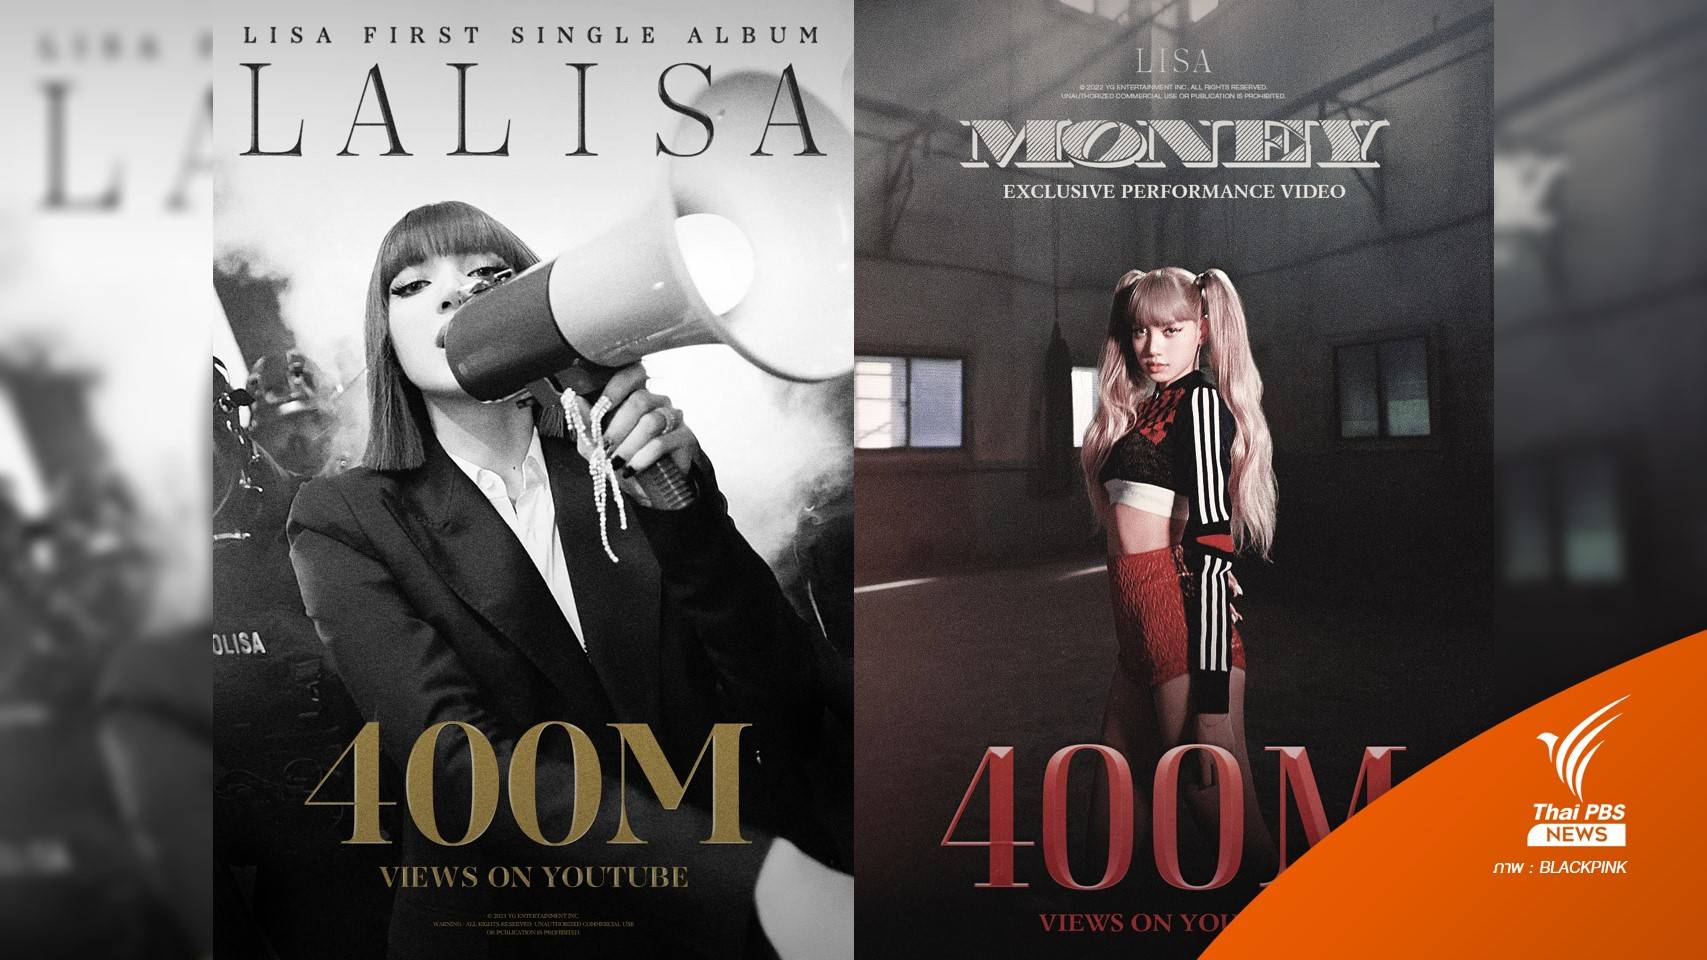 "ลิซ่า" แรงไม่หยุด! "LALISA-MONEY" 400 ล้านวิว ทุบสถิติศิลปินเดี่ยว K-pop